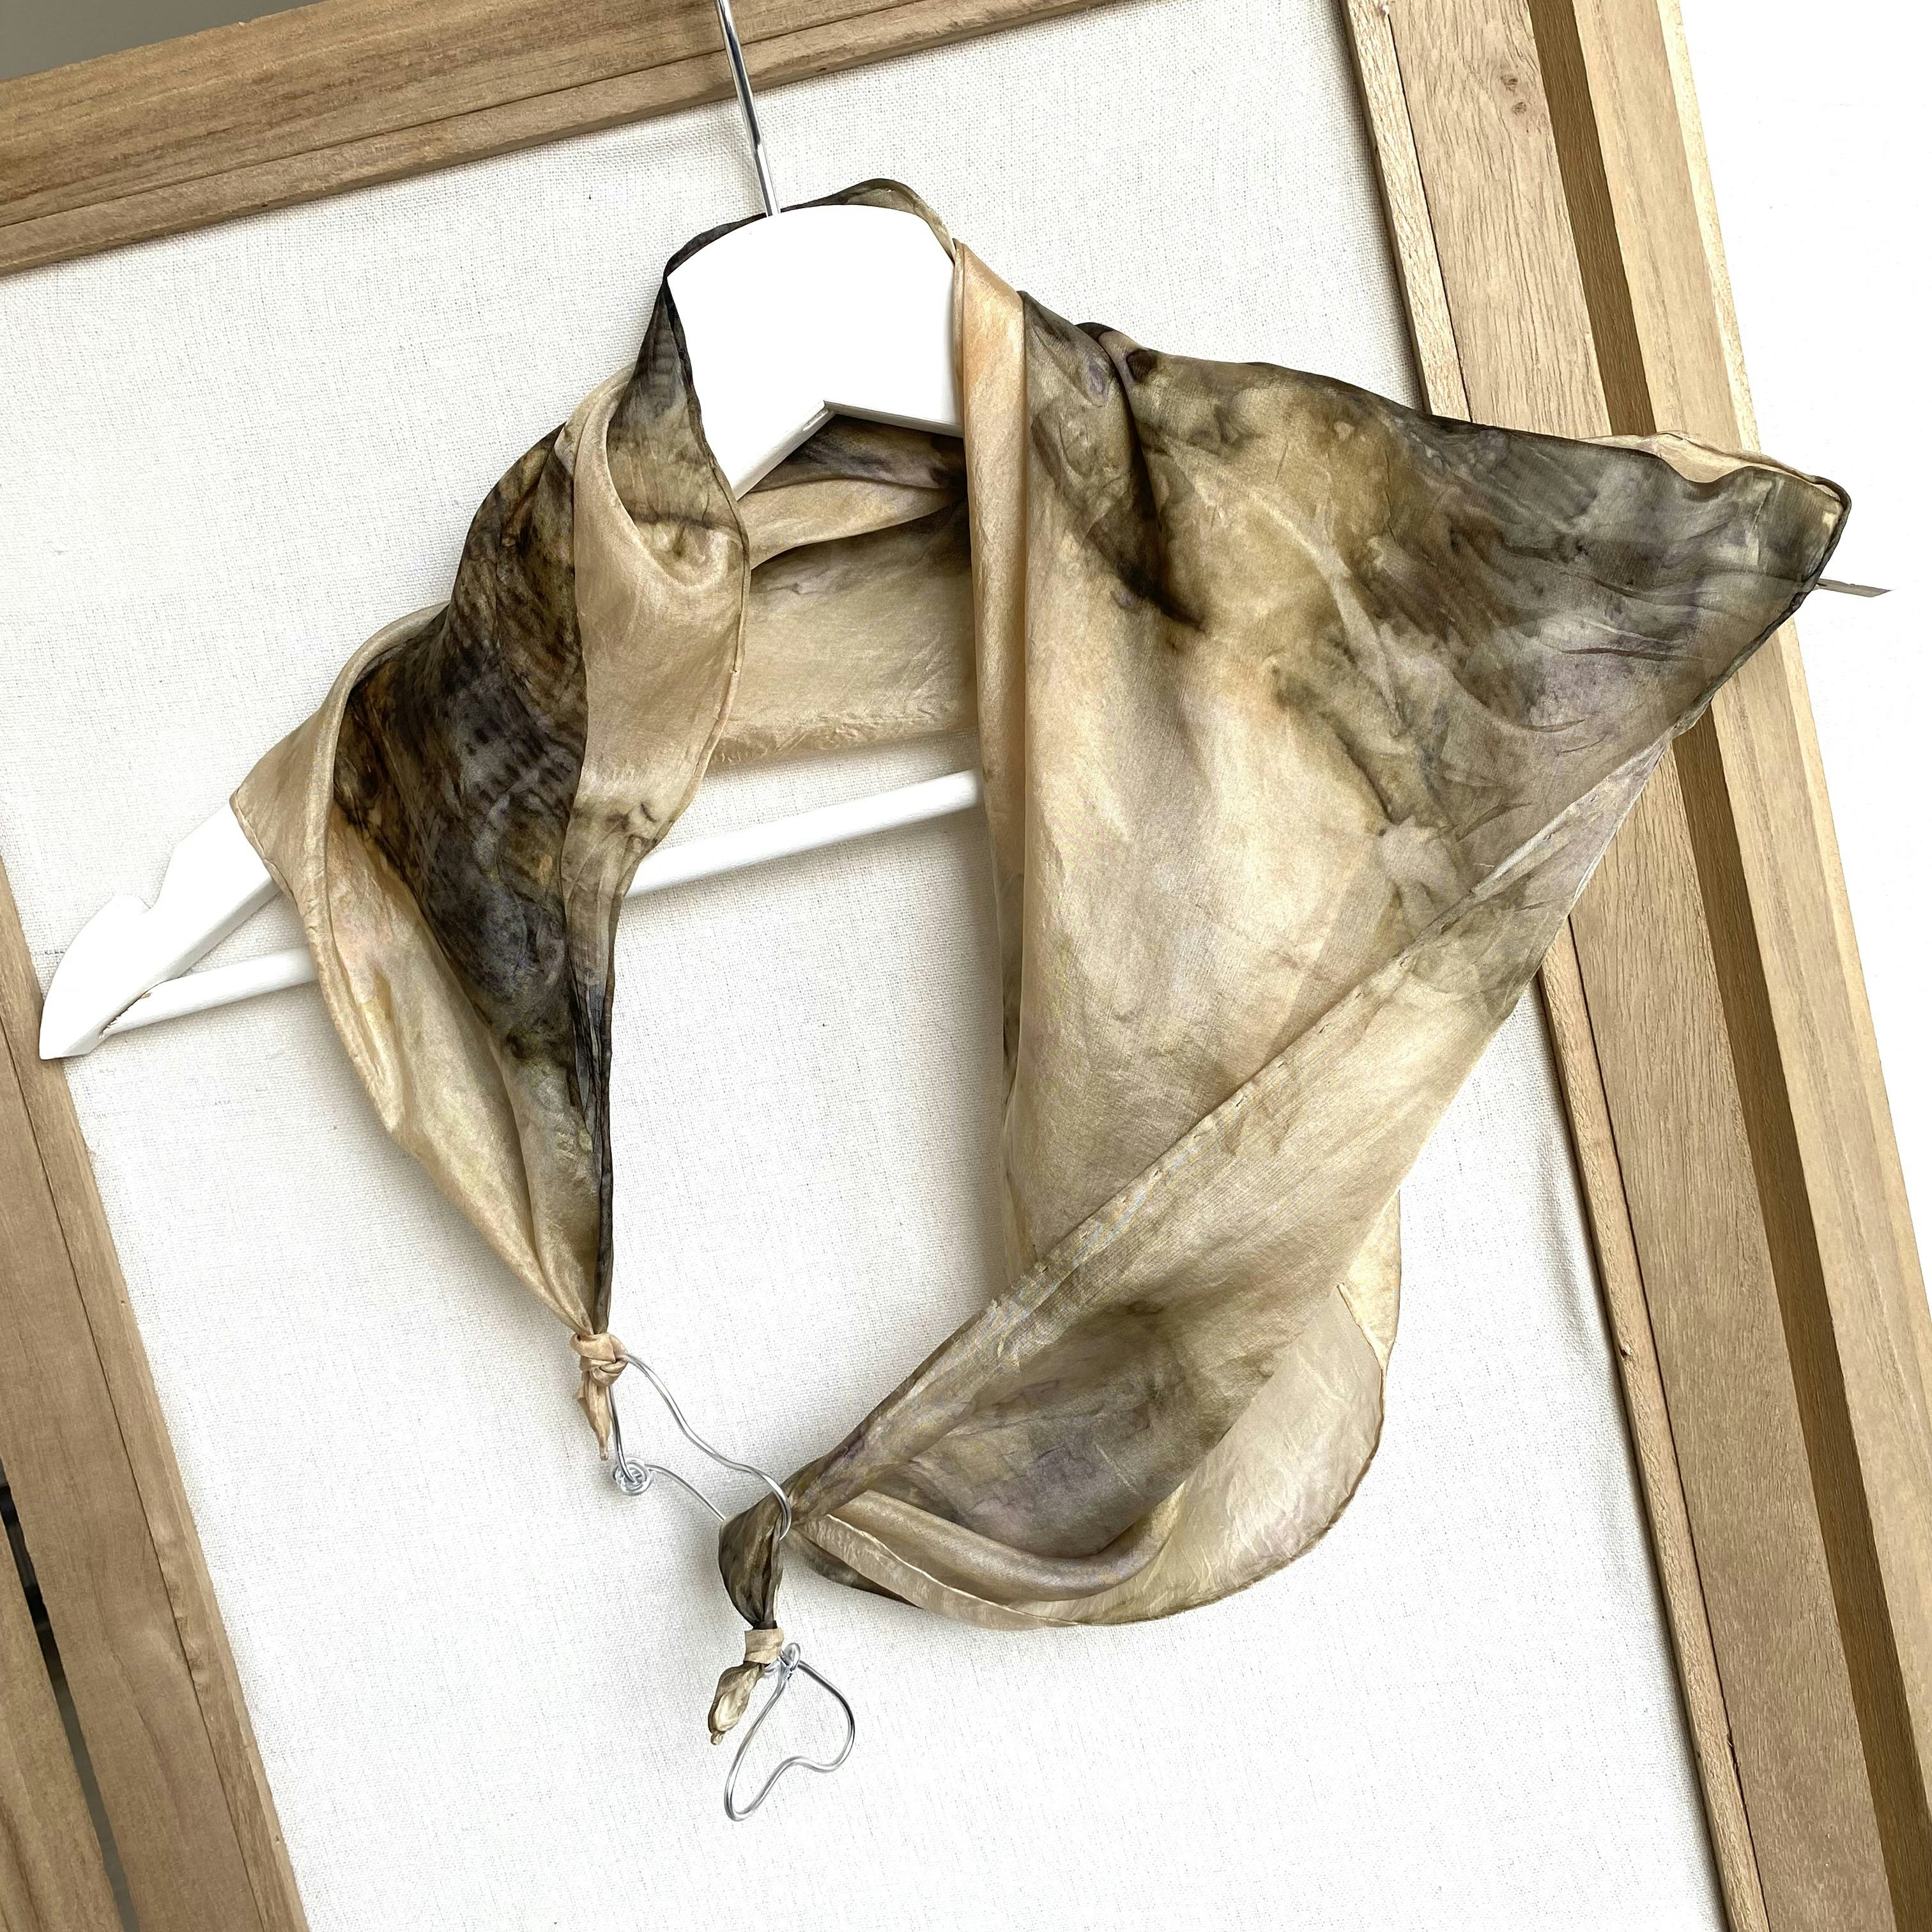 Foulard gioielli di seta tinto con foglie di acero, artisanal product for direct sale in Switzerland